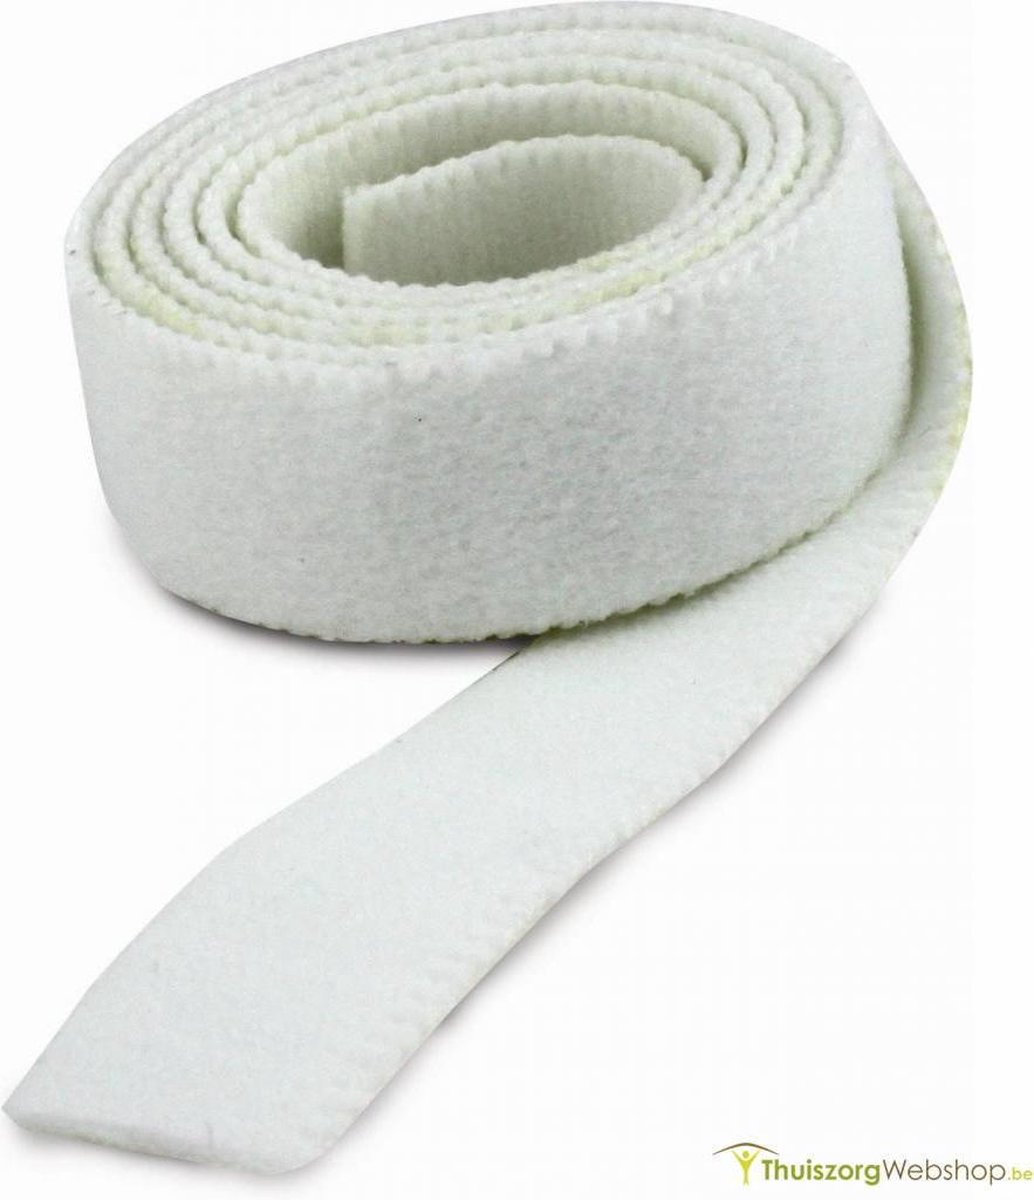 Velcro elastische lusband- 2,5 cm breed, zwart- rol van 5 m